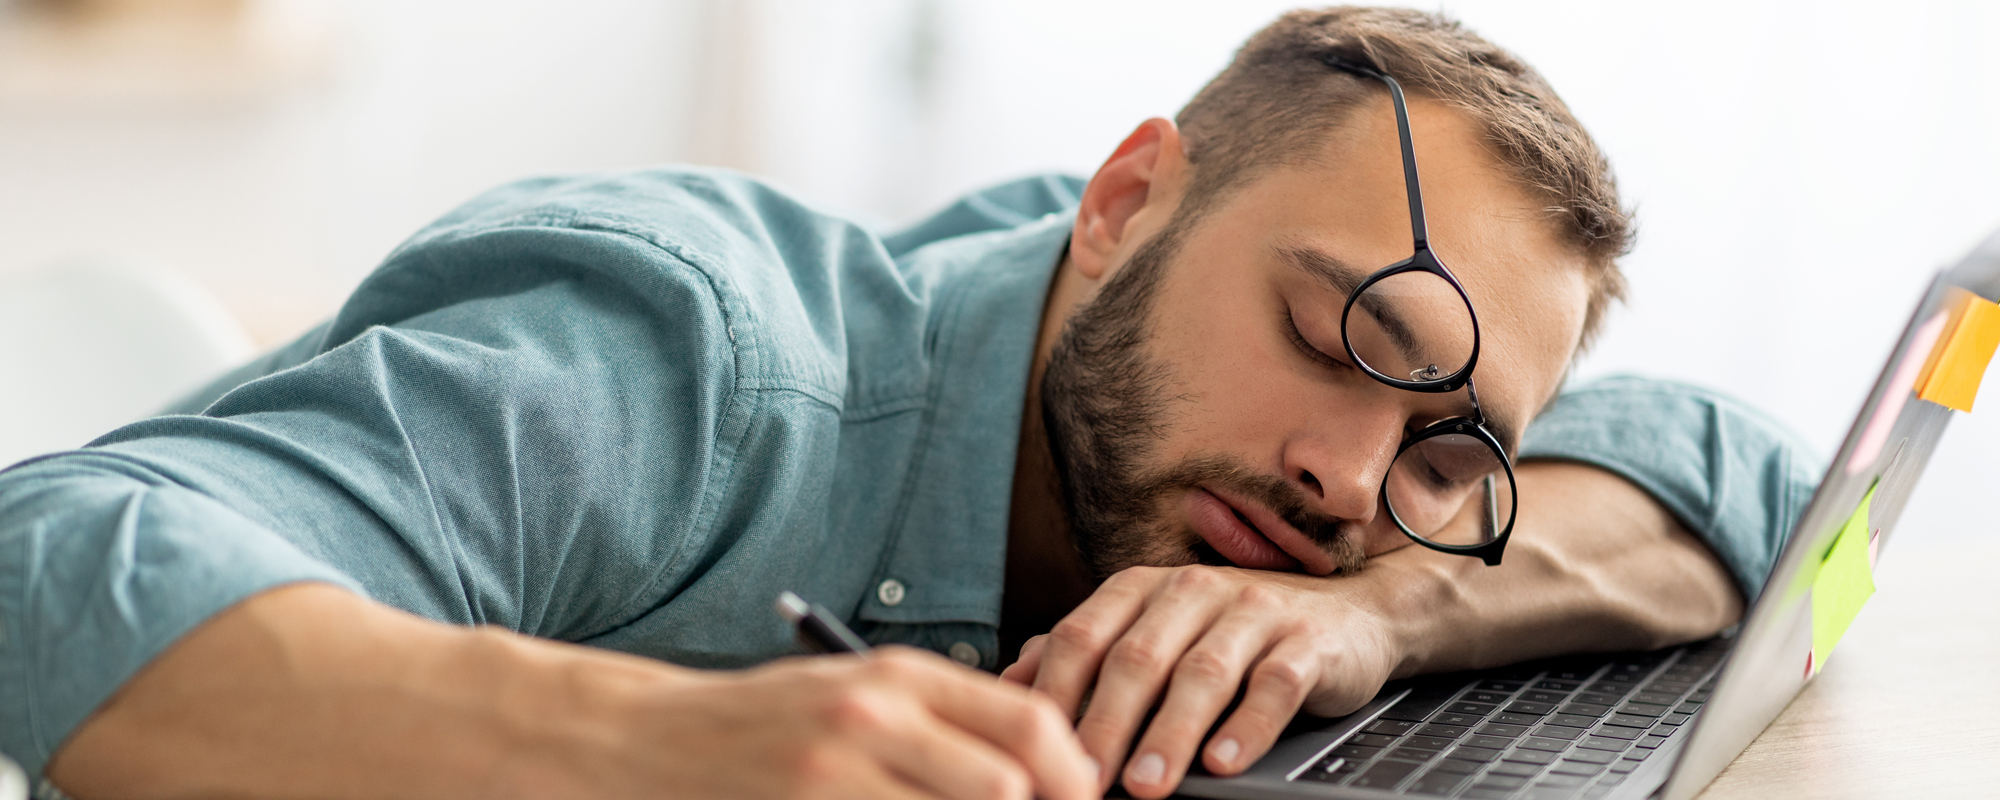 Schon wieder Überstunden. Junger braunhaariger Mann mit Vollbart schläft auf Laptop-Tastatur ein. Brille verschoben, Kuli noch in der Hand.